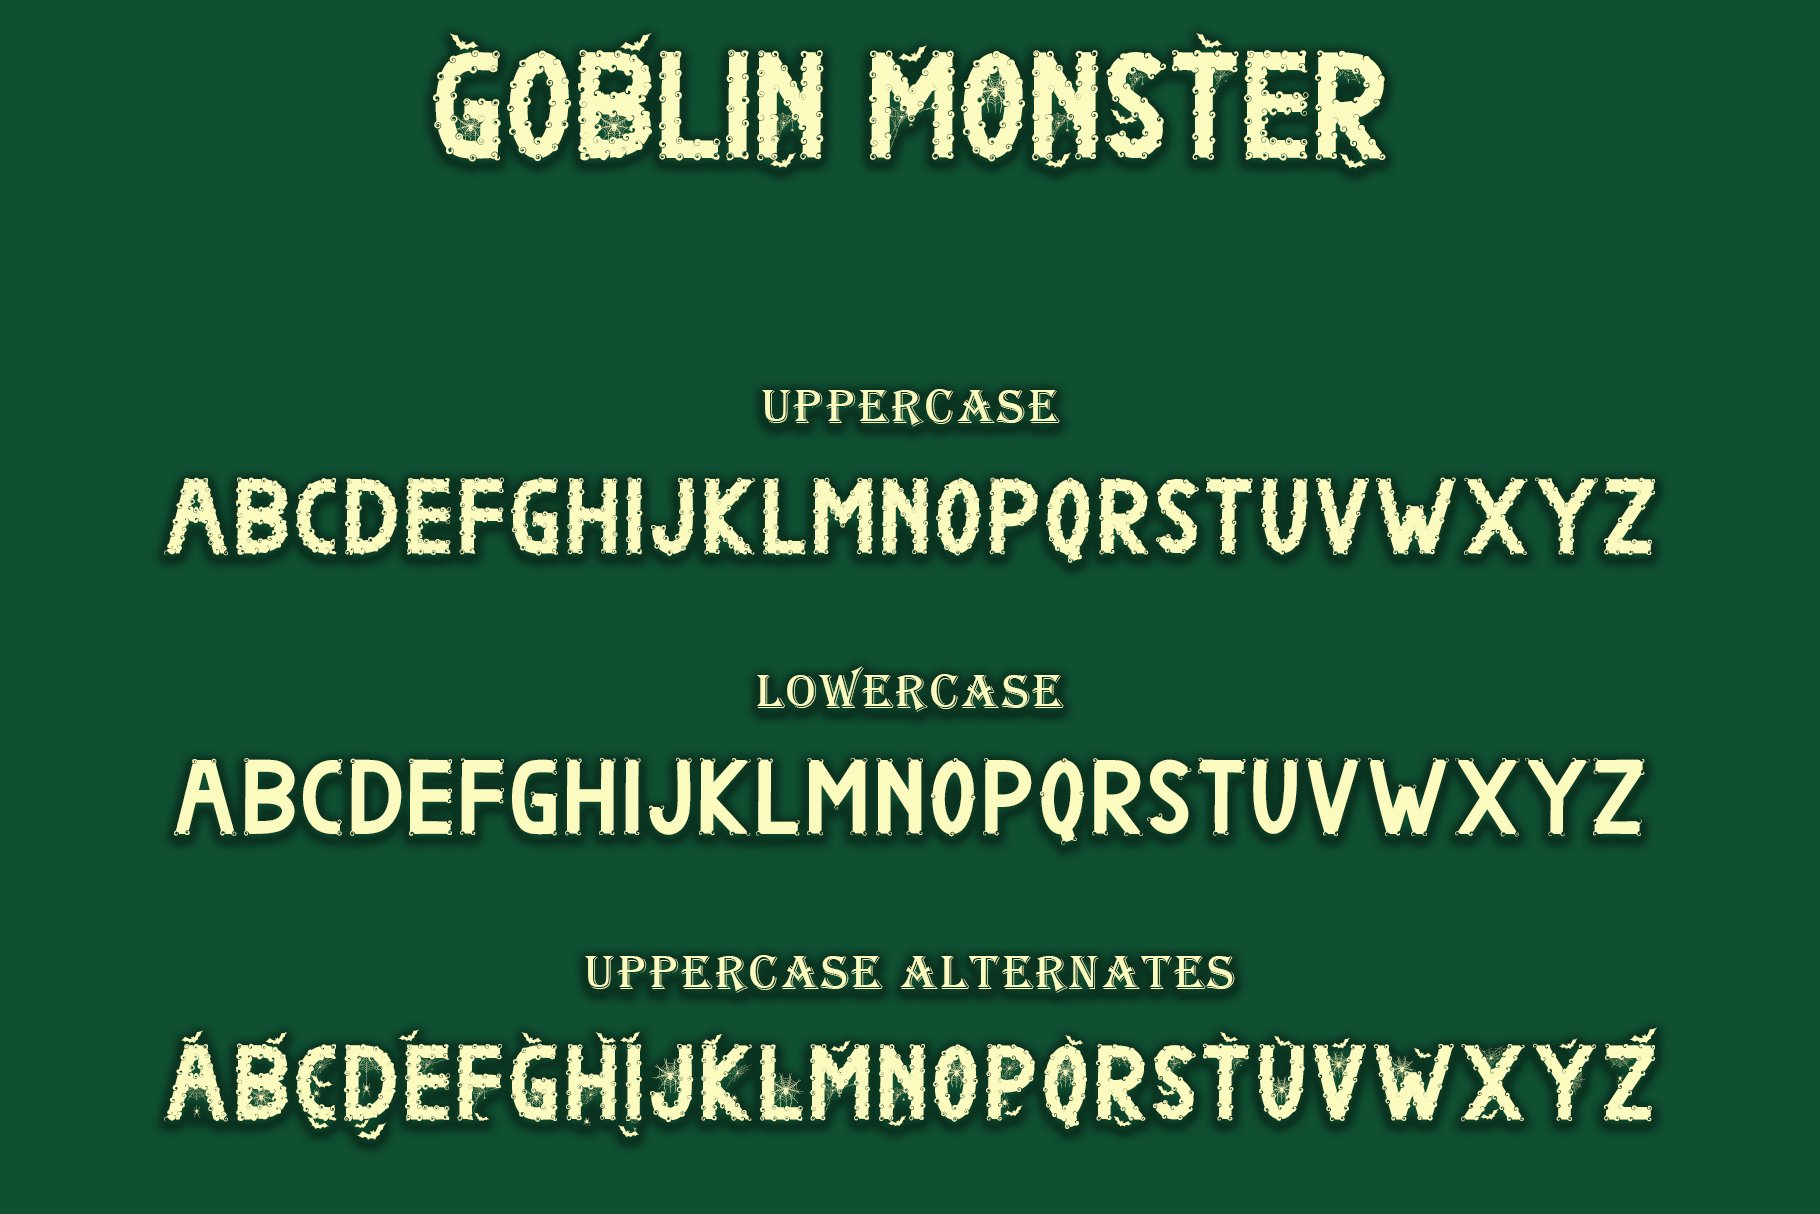 goblin monster preview 8 fbd 911